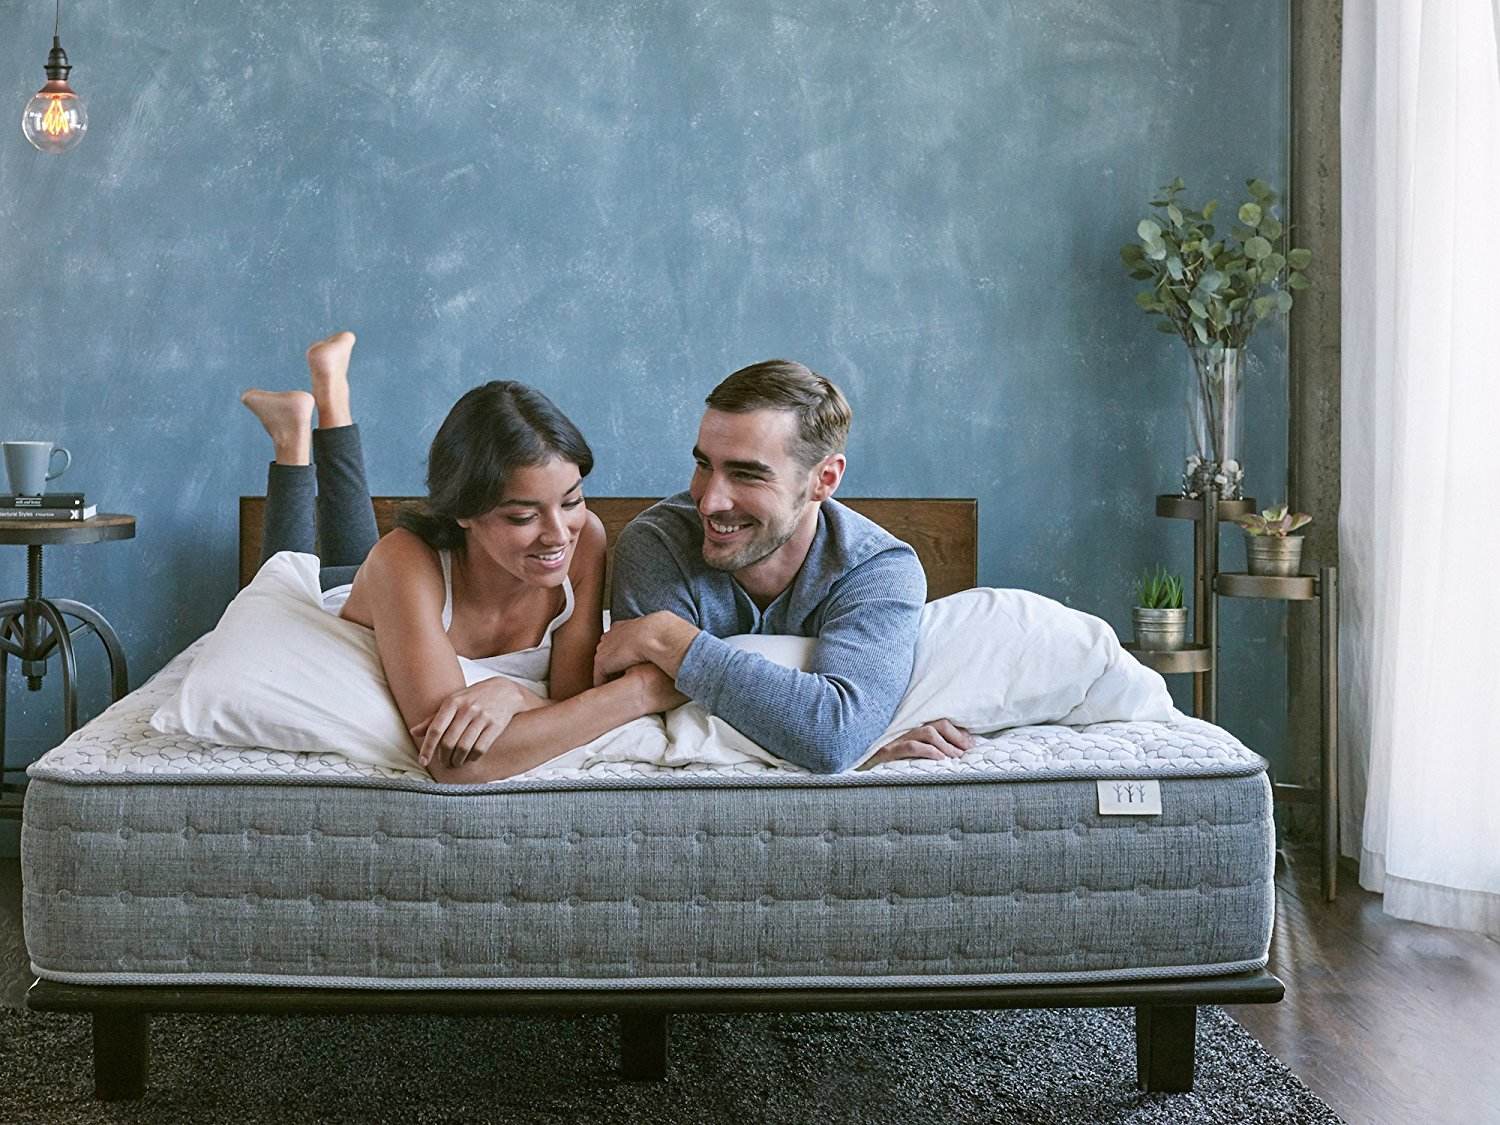 brentwood homes sierra mattress review